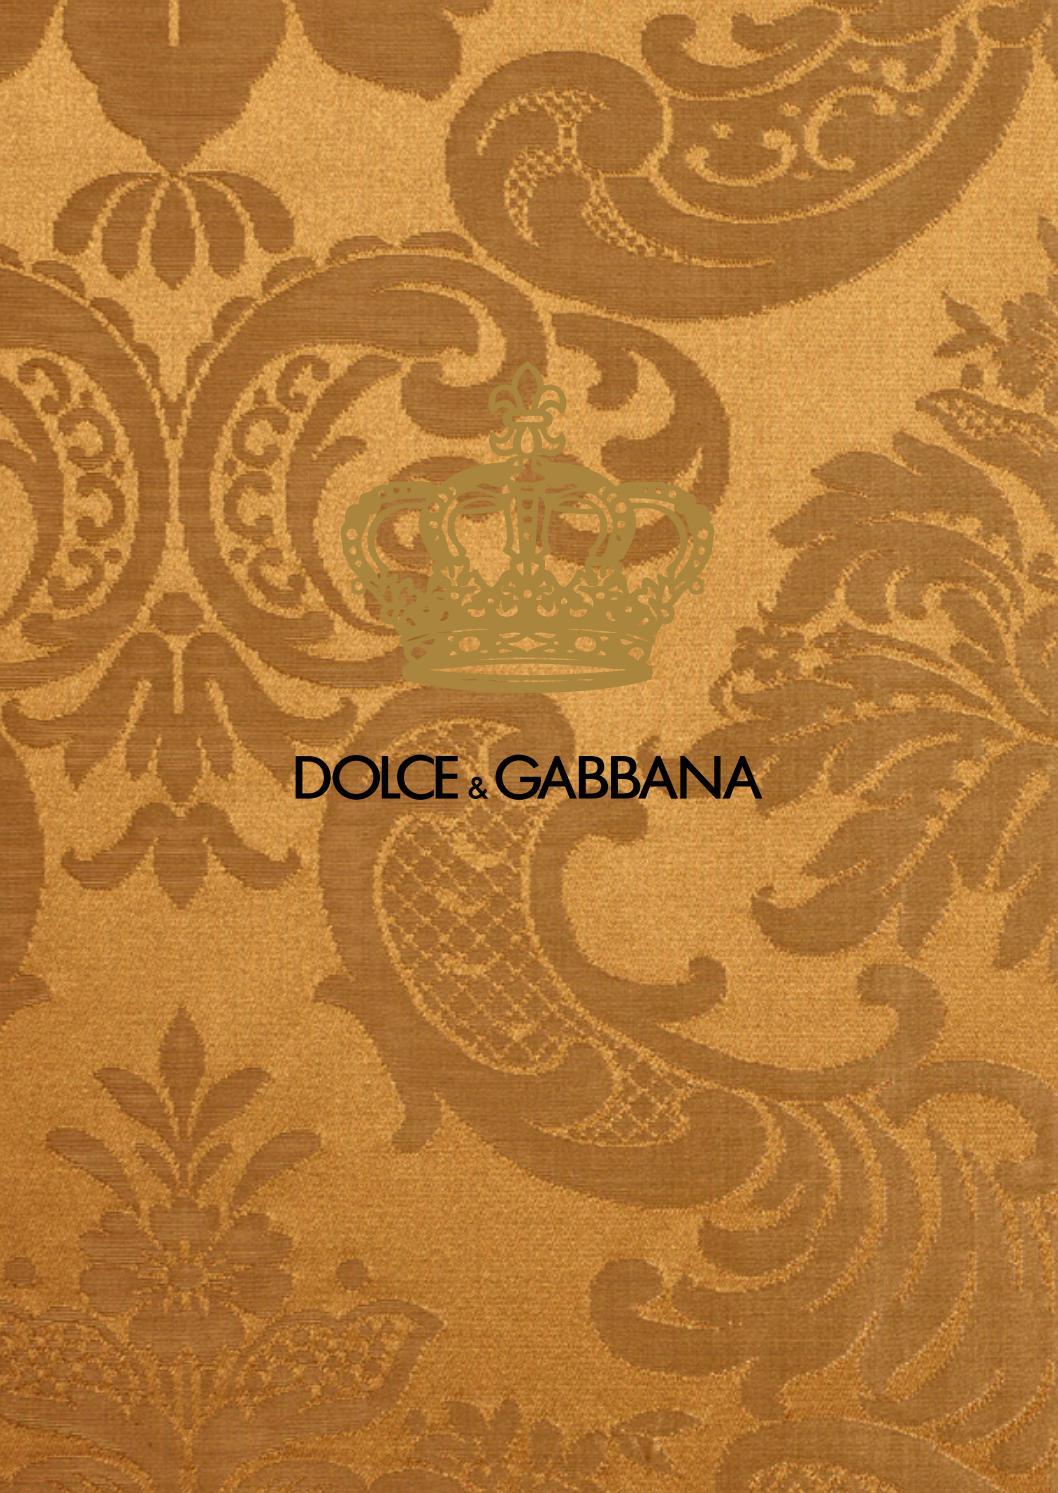 Dolce and Gabbana Logo 1058x1493